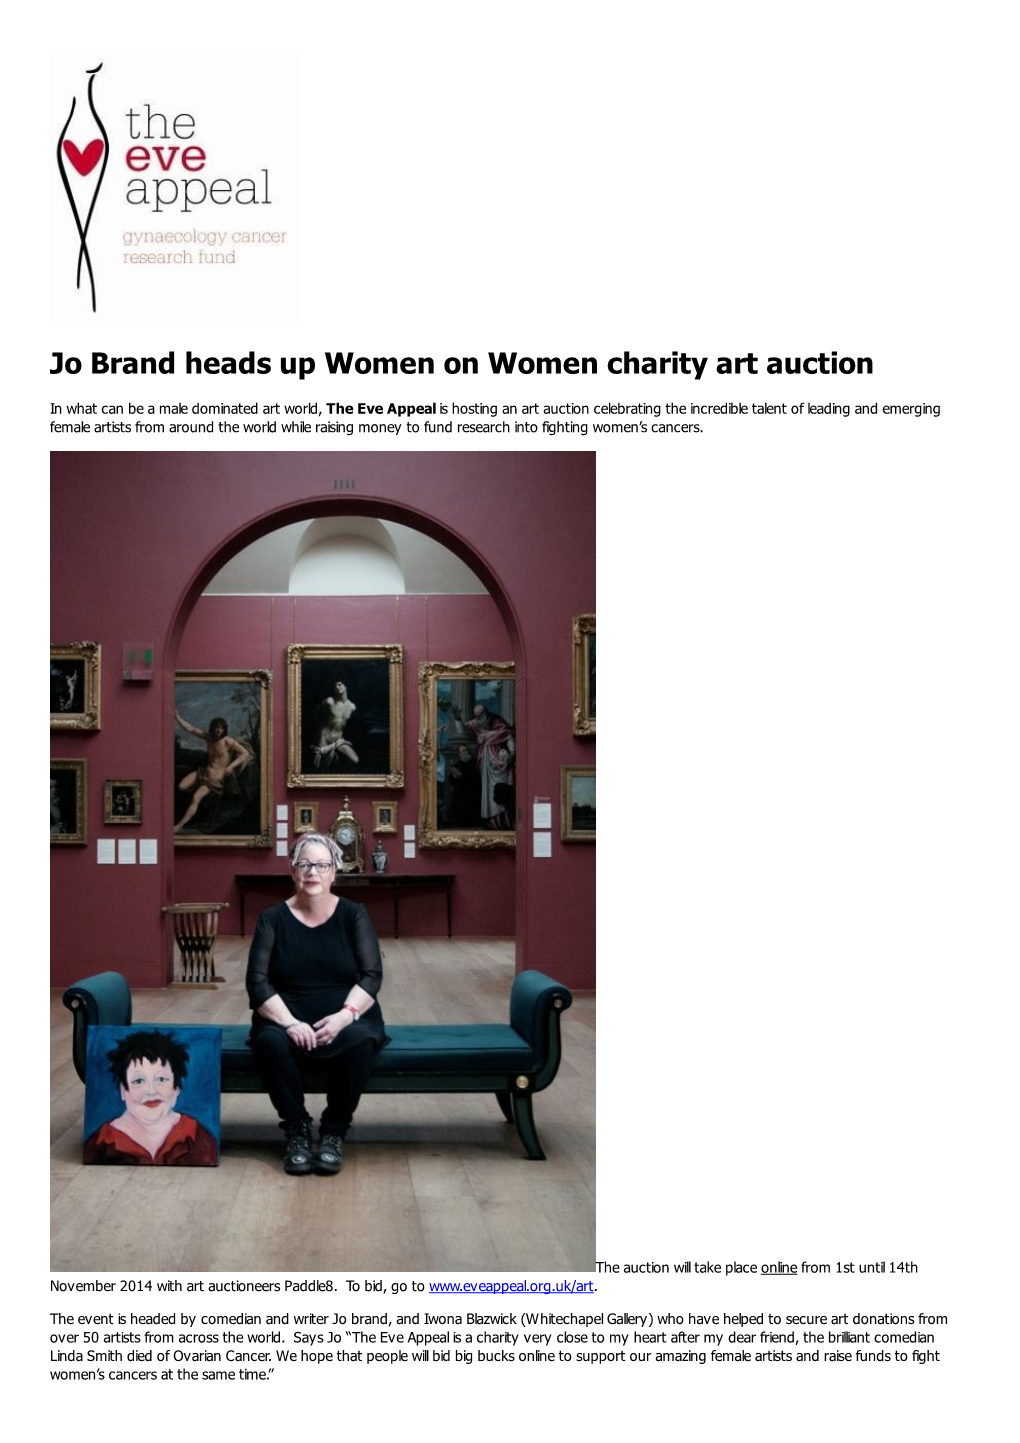 Jo Brand Heads up Women on Women Charity Art Auction